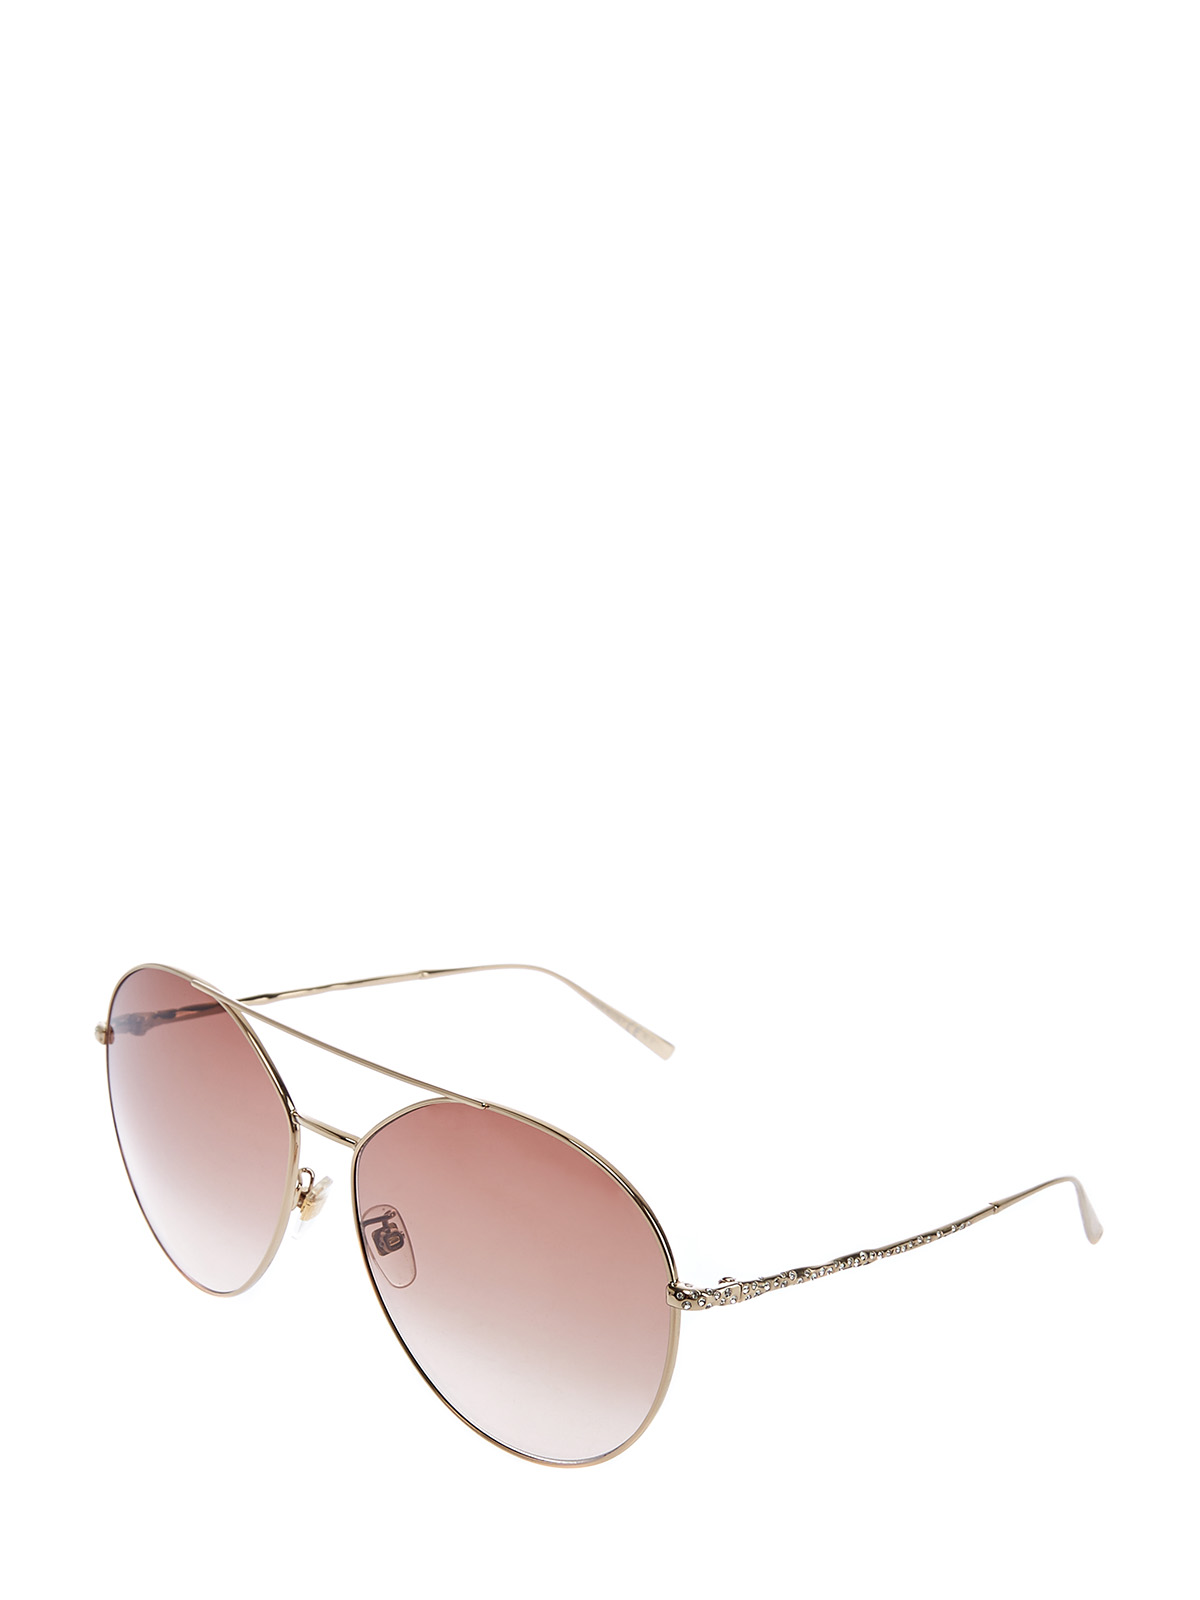 Очки-авиаторы с тонким двойным мостом и кристаллами Swarovski GIVENCHY (sunglasses), цвет коричневый - фото 2